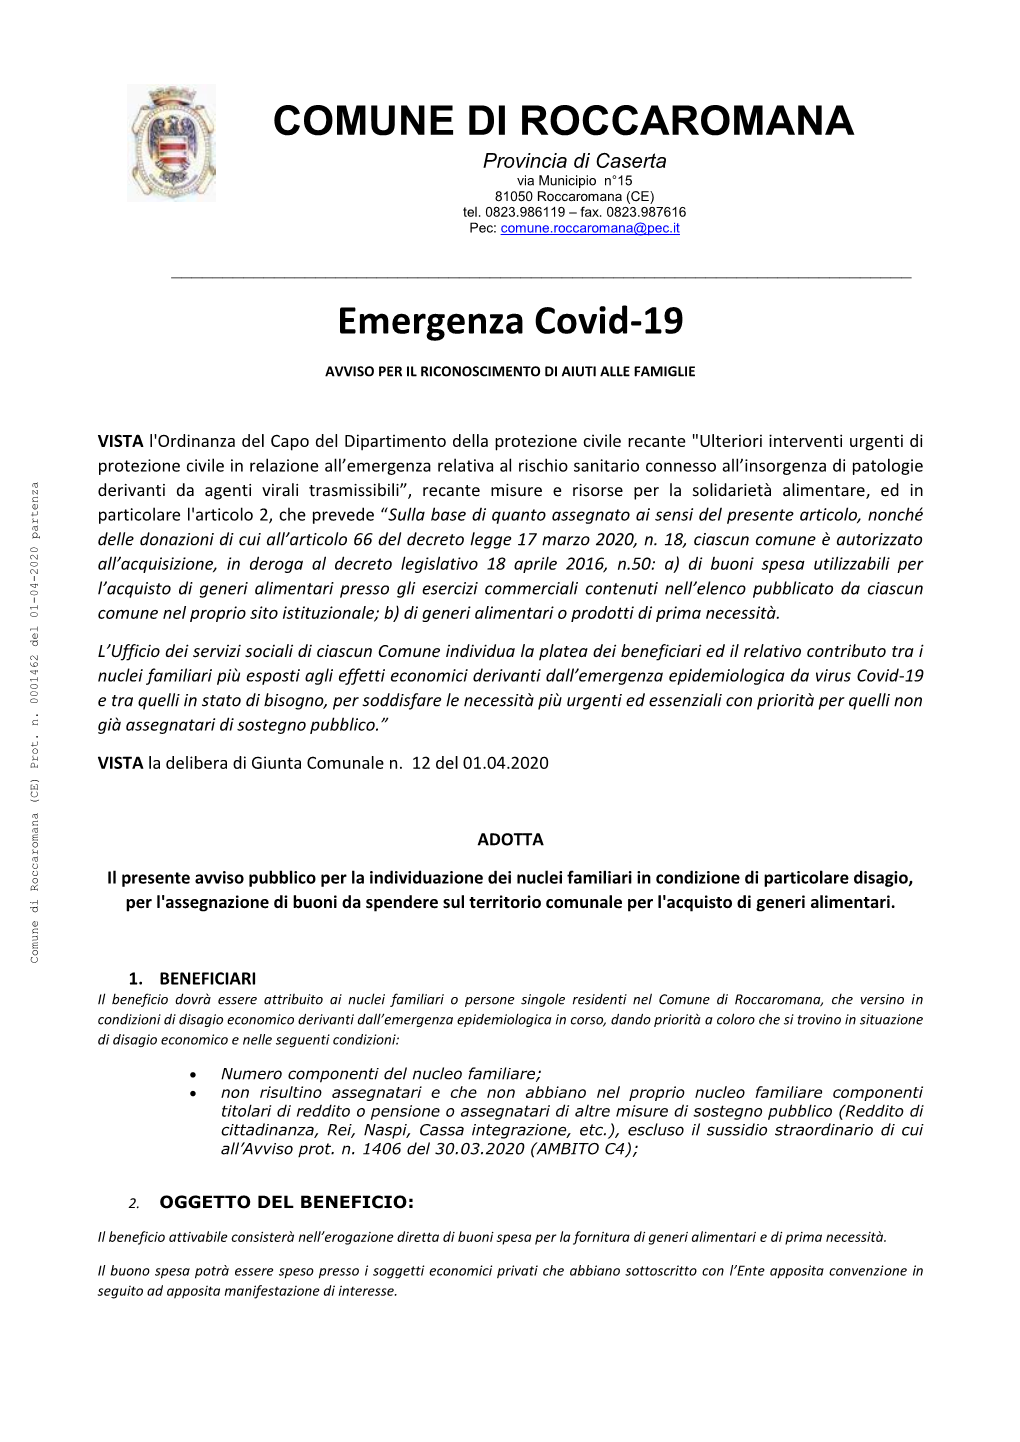 COMUNE DI ROCCAROMANA Emergenza Covid-19